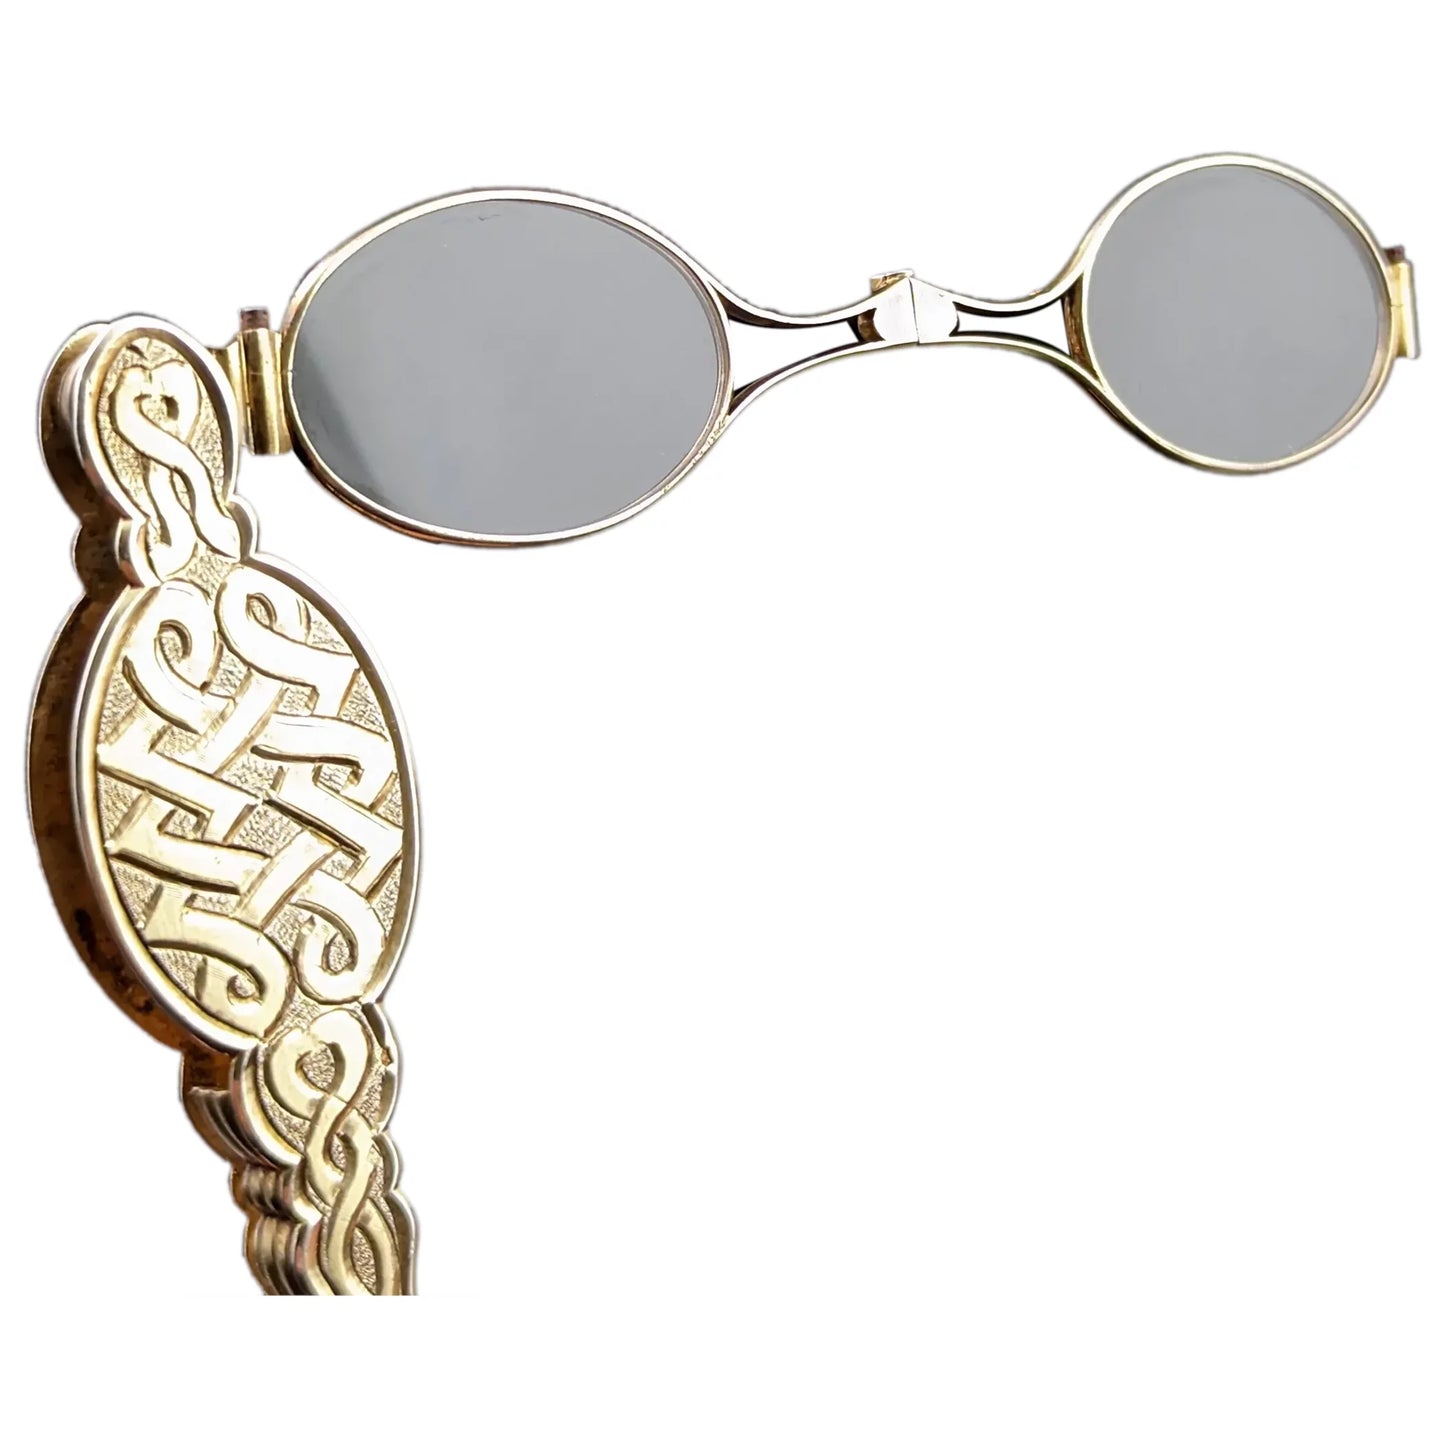 Antique French silver gilt lorgnettes, spectacles, Art Nouveau